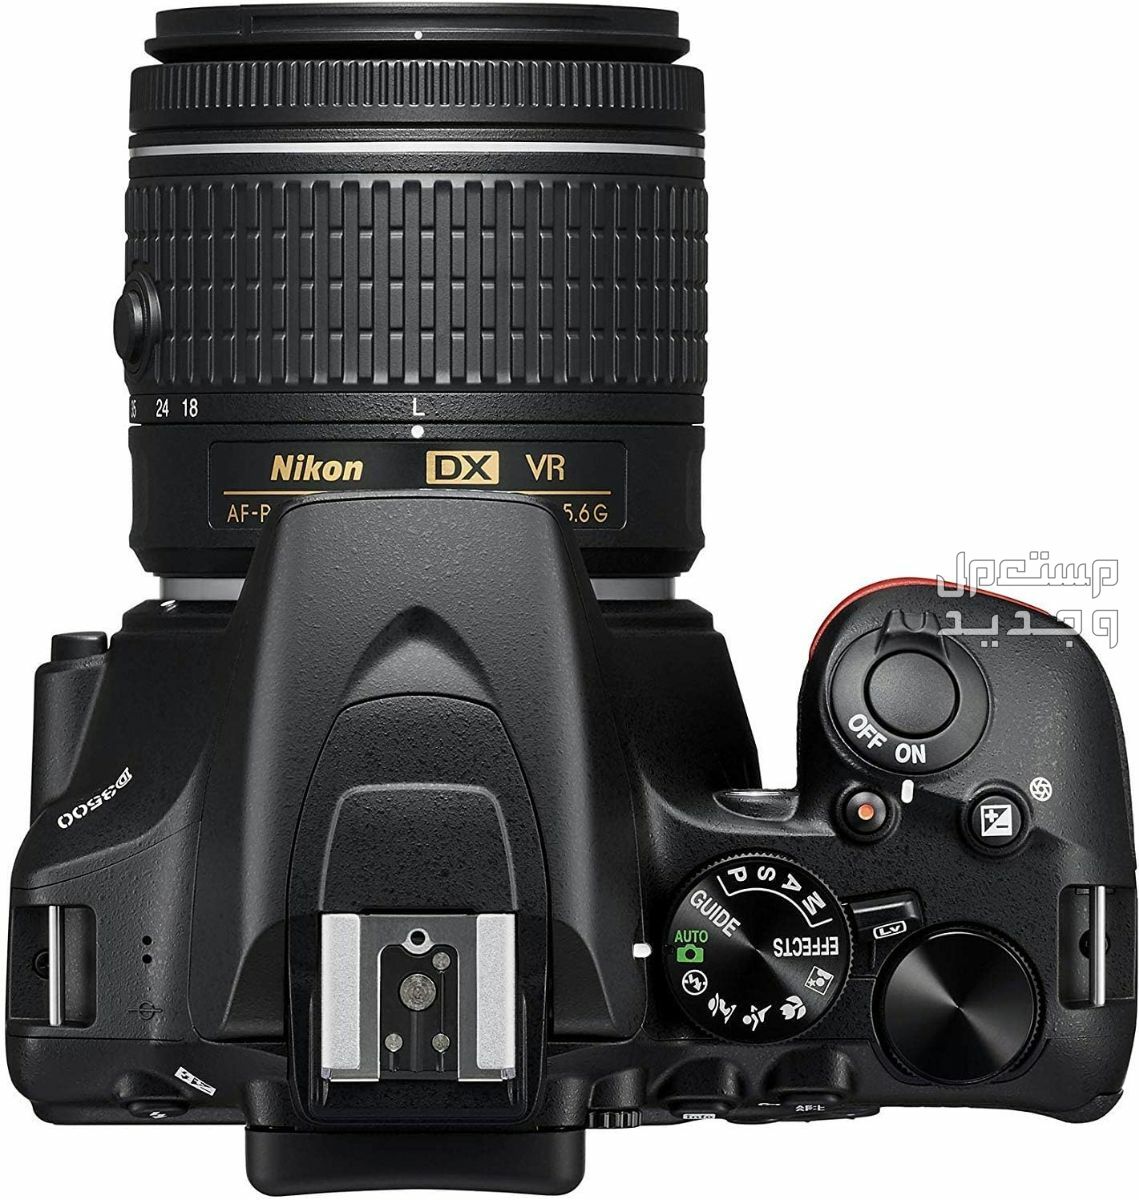 10 كاميرات تصوير ماركات عالمية بأسعار رخيصة في فلسطين سعر كاميرا Nikon D3500